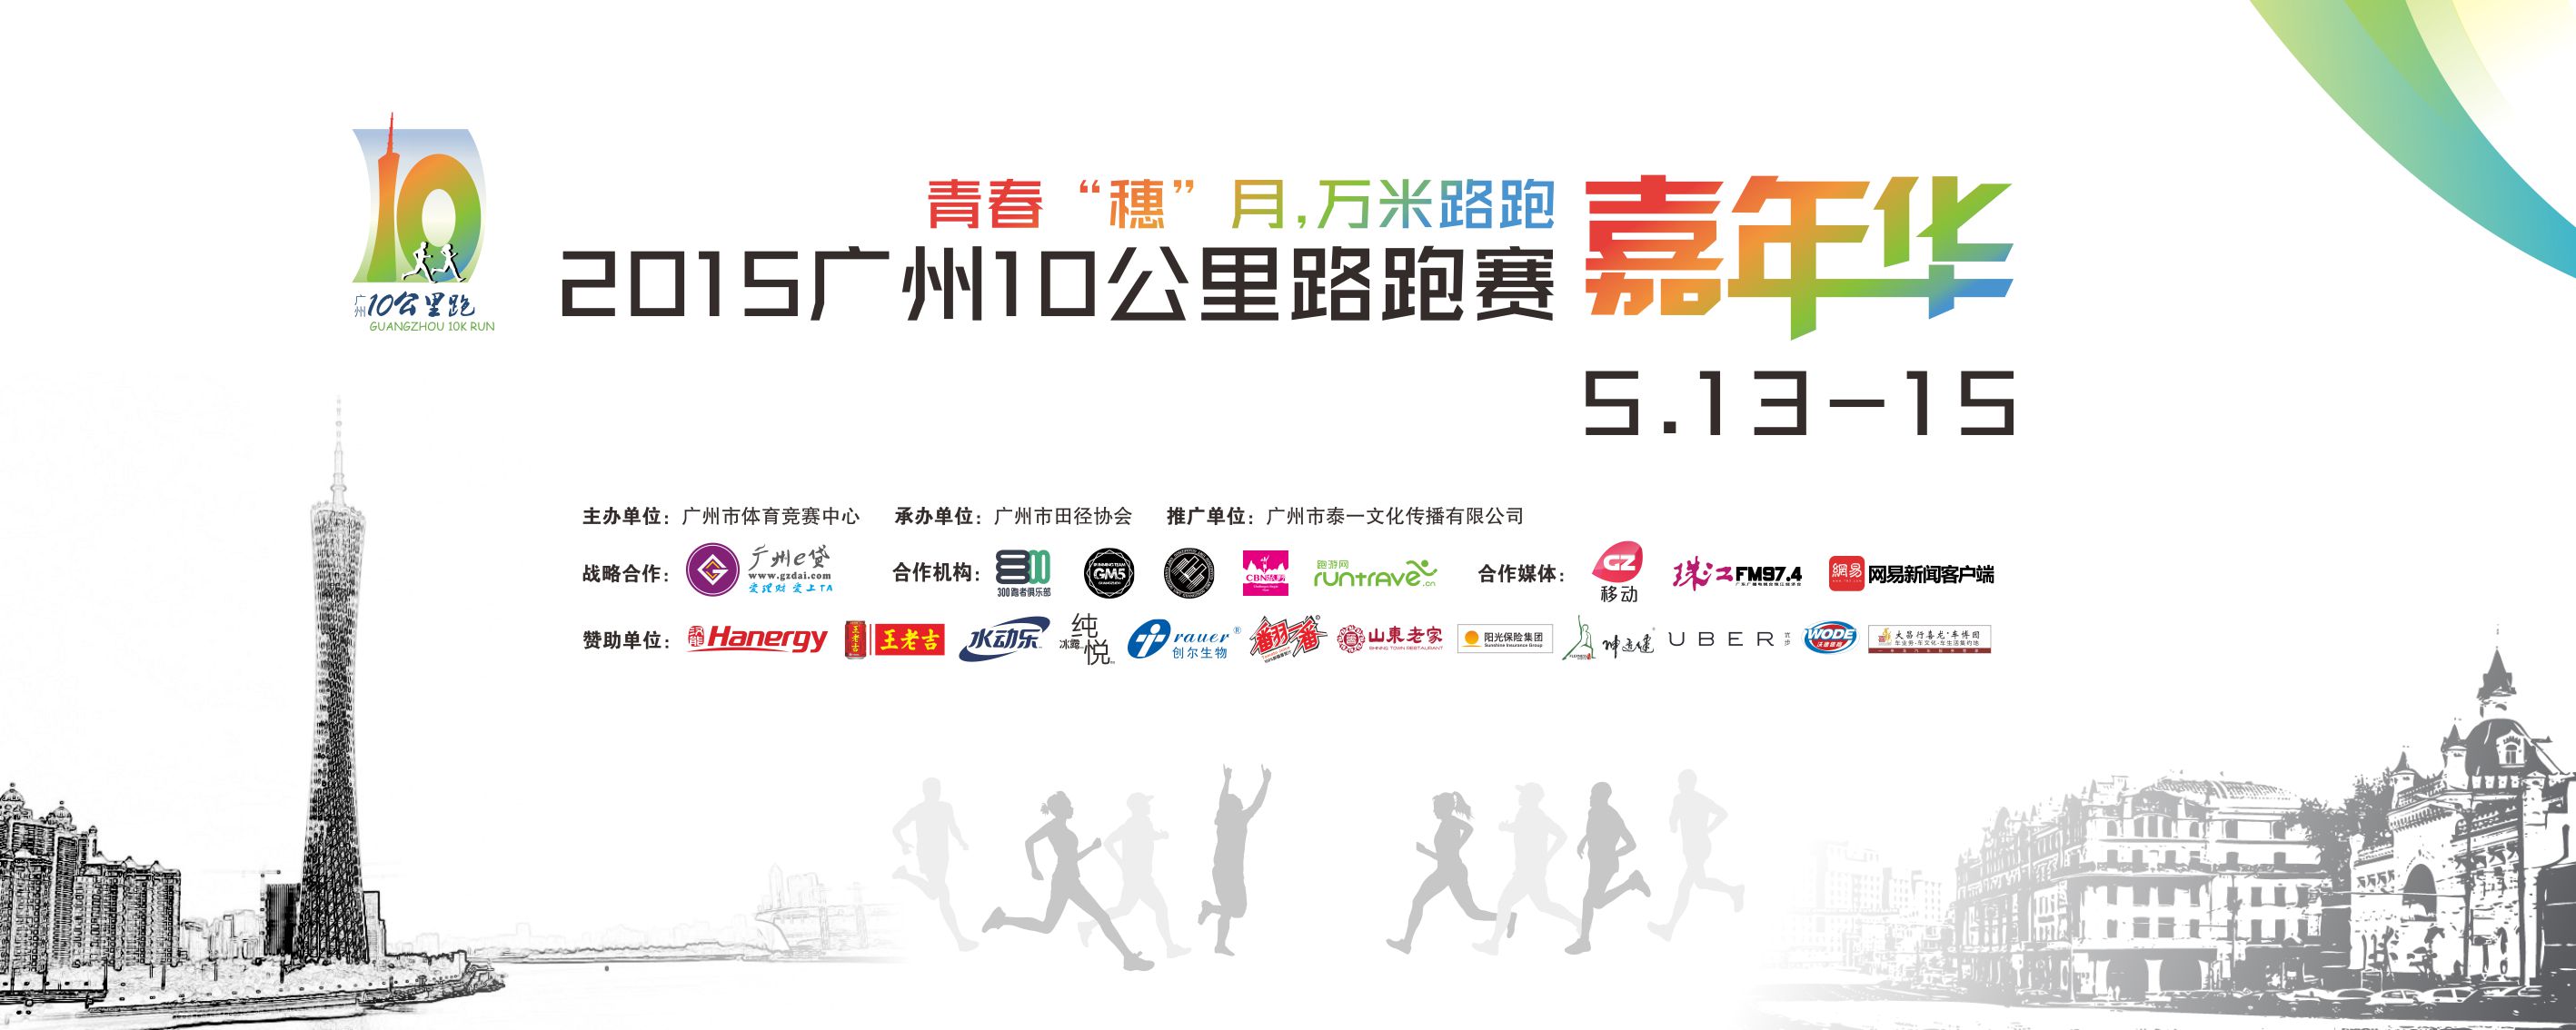 2015广州10公里路跑赛——嘉年华